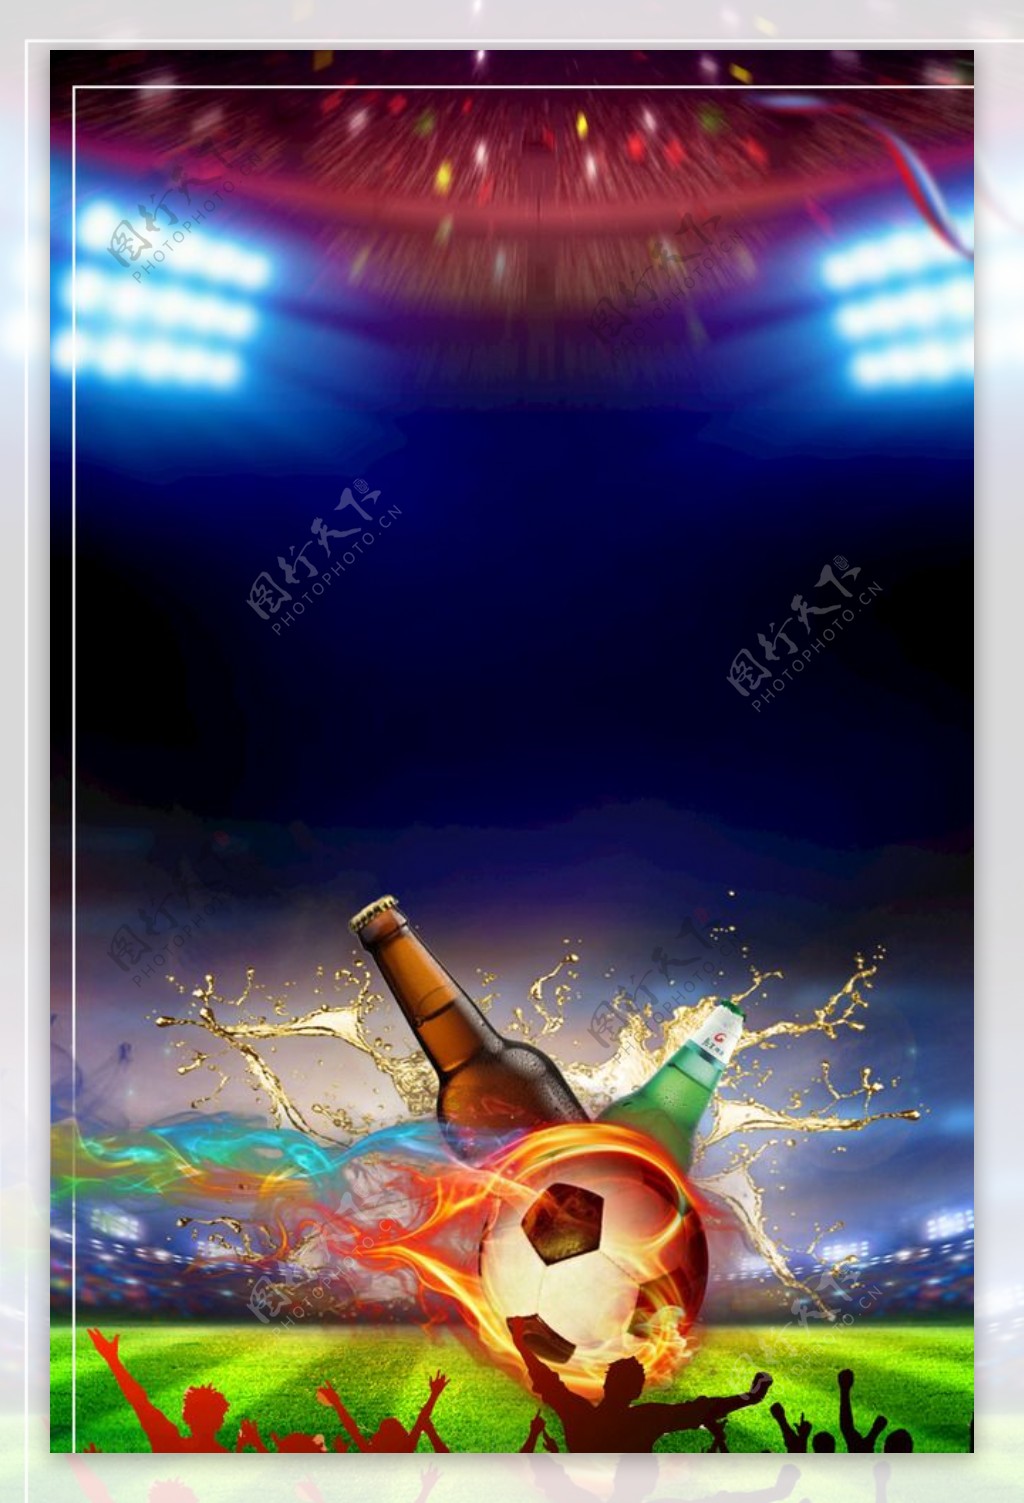 世界杯海报